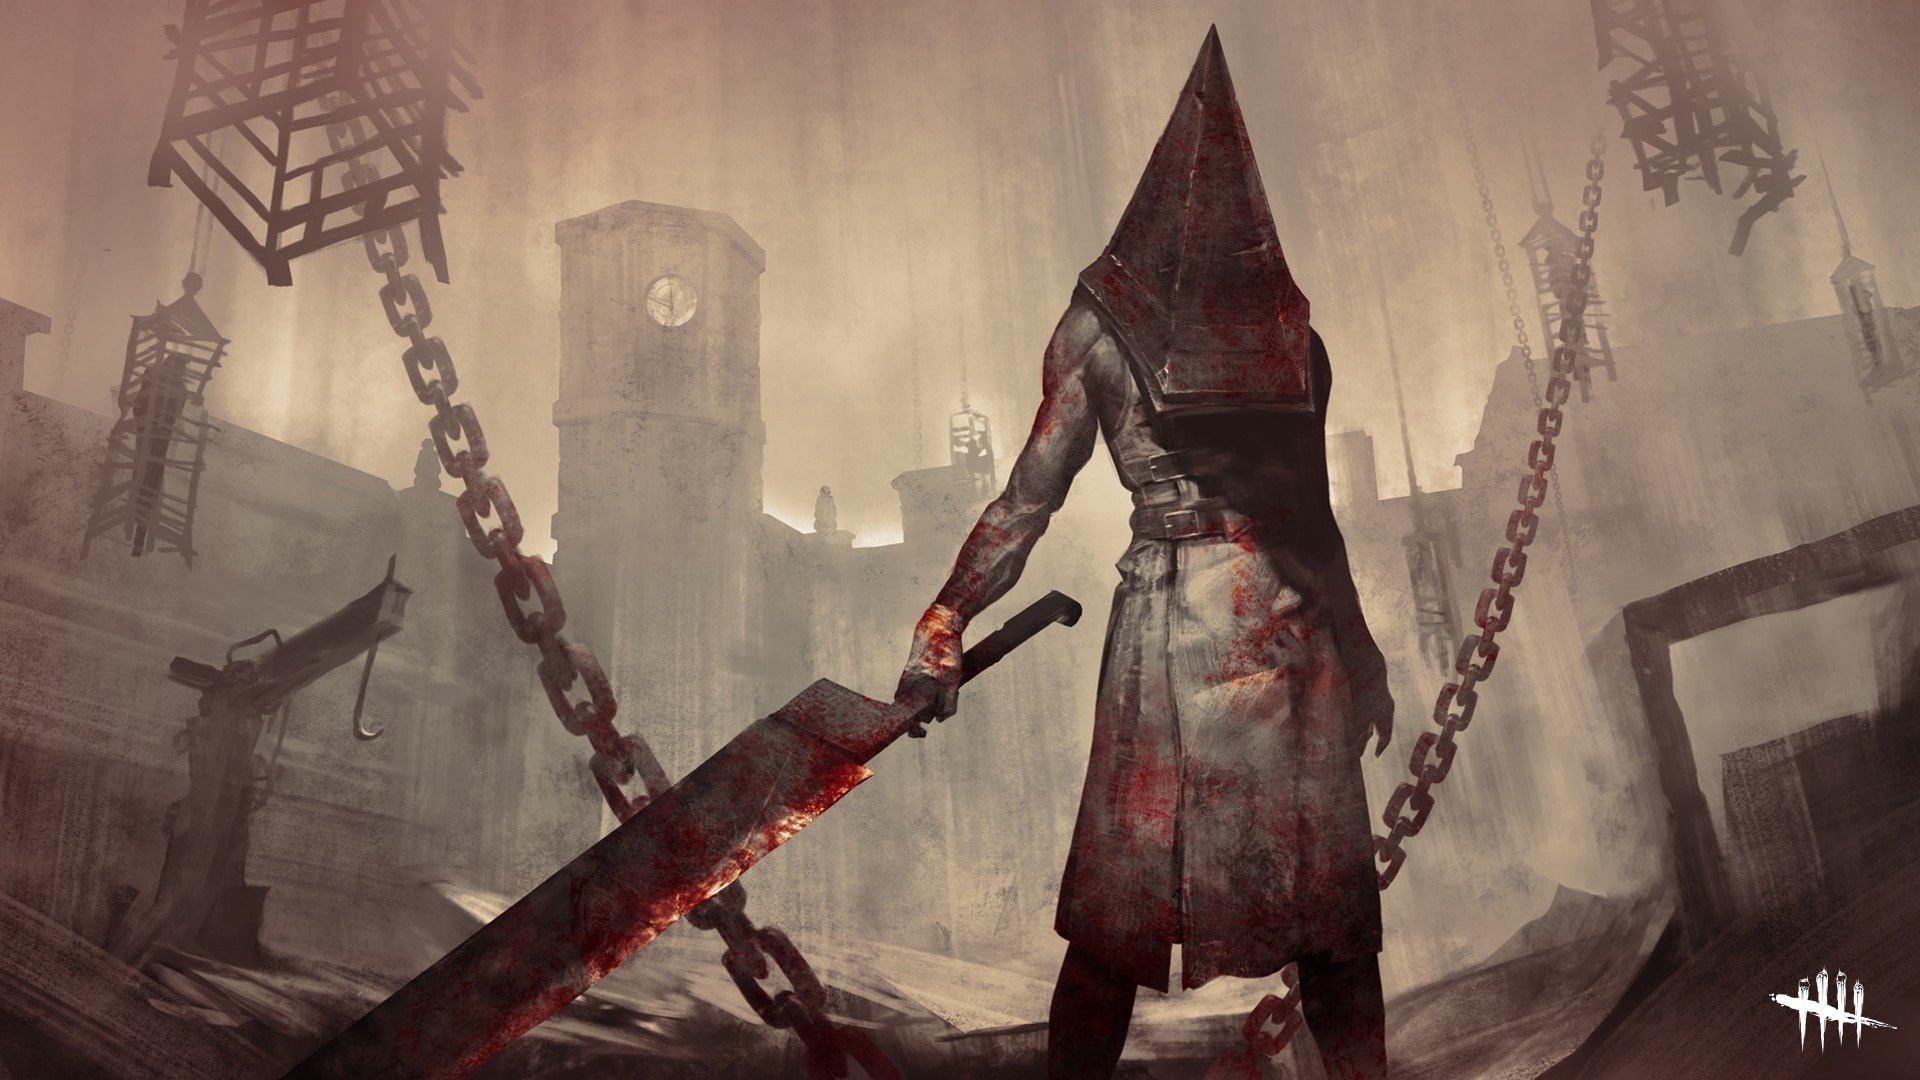 Vazam imagens do novo Silent Hill no Twitter; Entenda o caso! 2022 Viciados